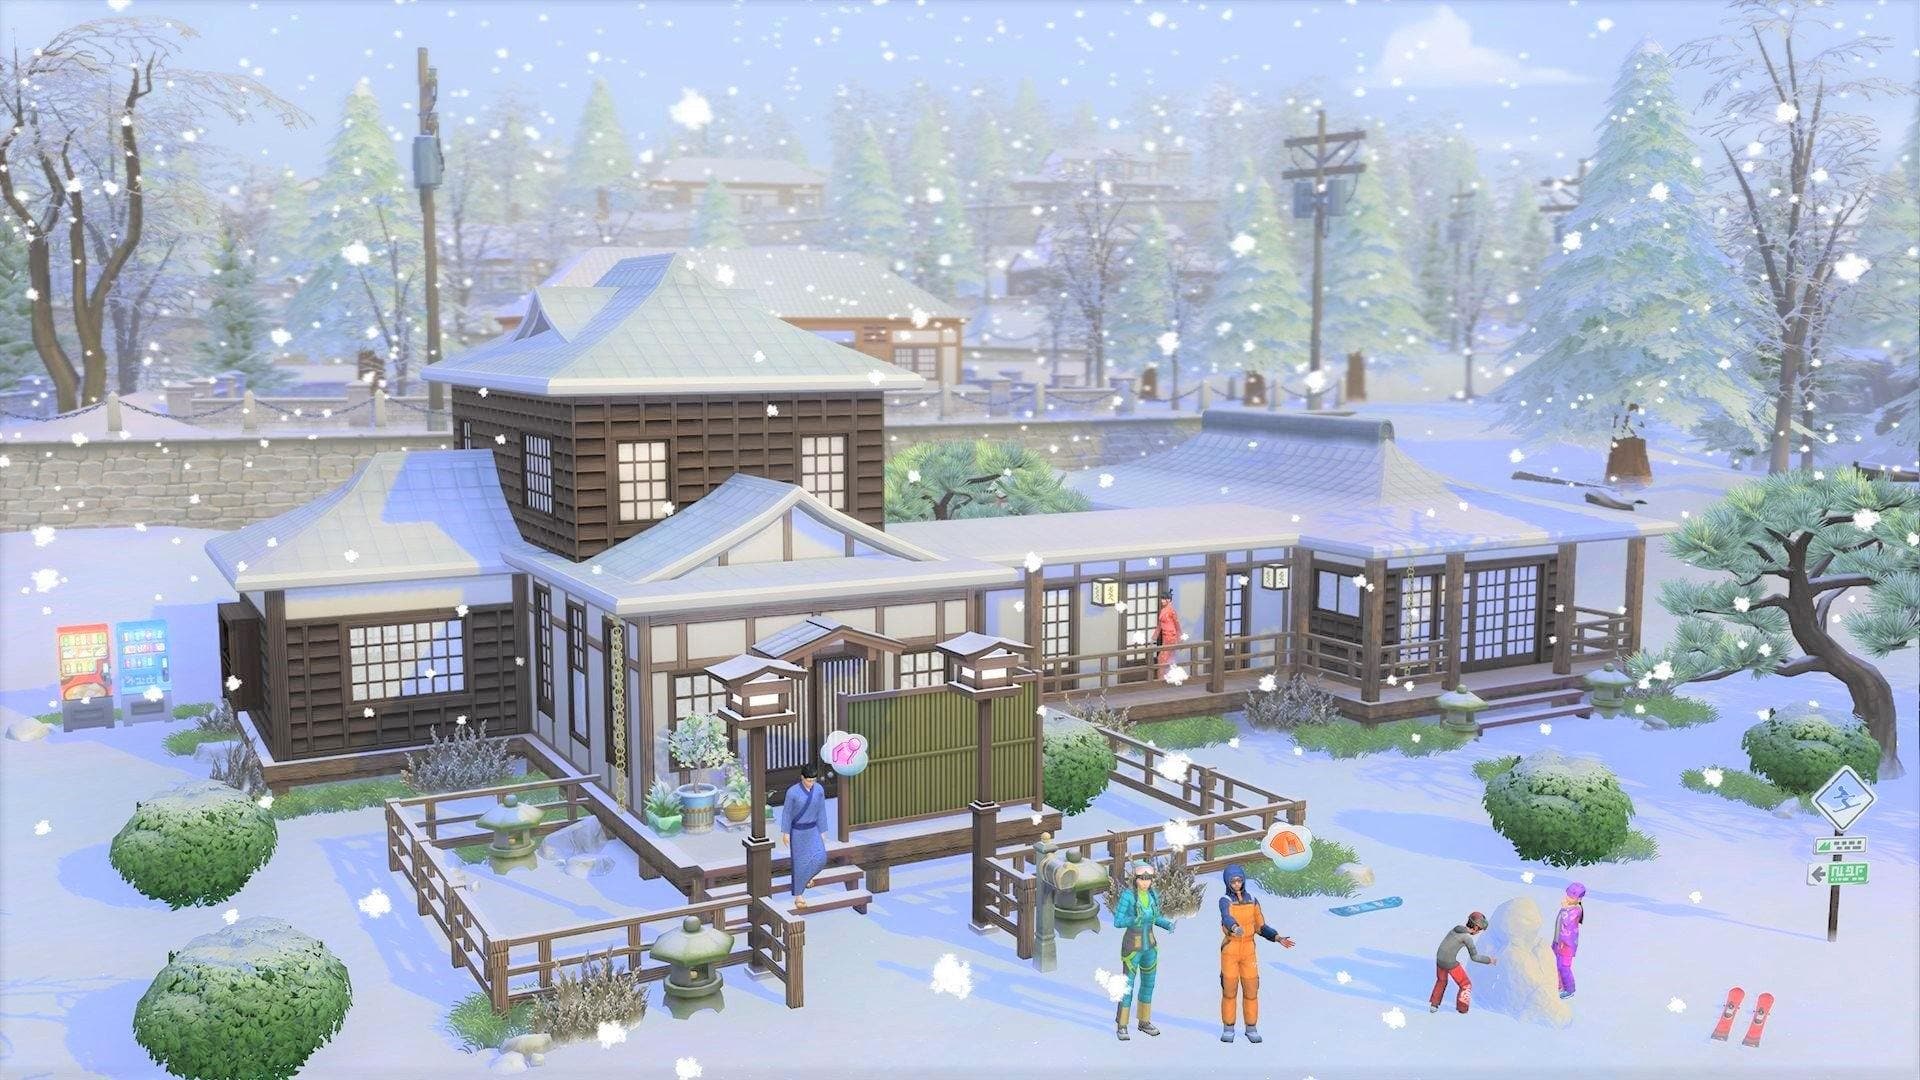 The Sims 4: Snowy Escape - למחשב - EXON - גיימינג ותוכנות - משחקים ותוכנות למחשב ולאקס בוקס!